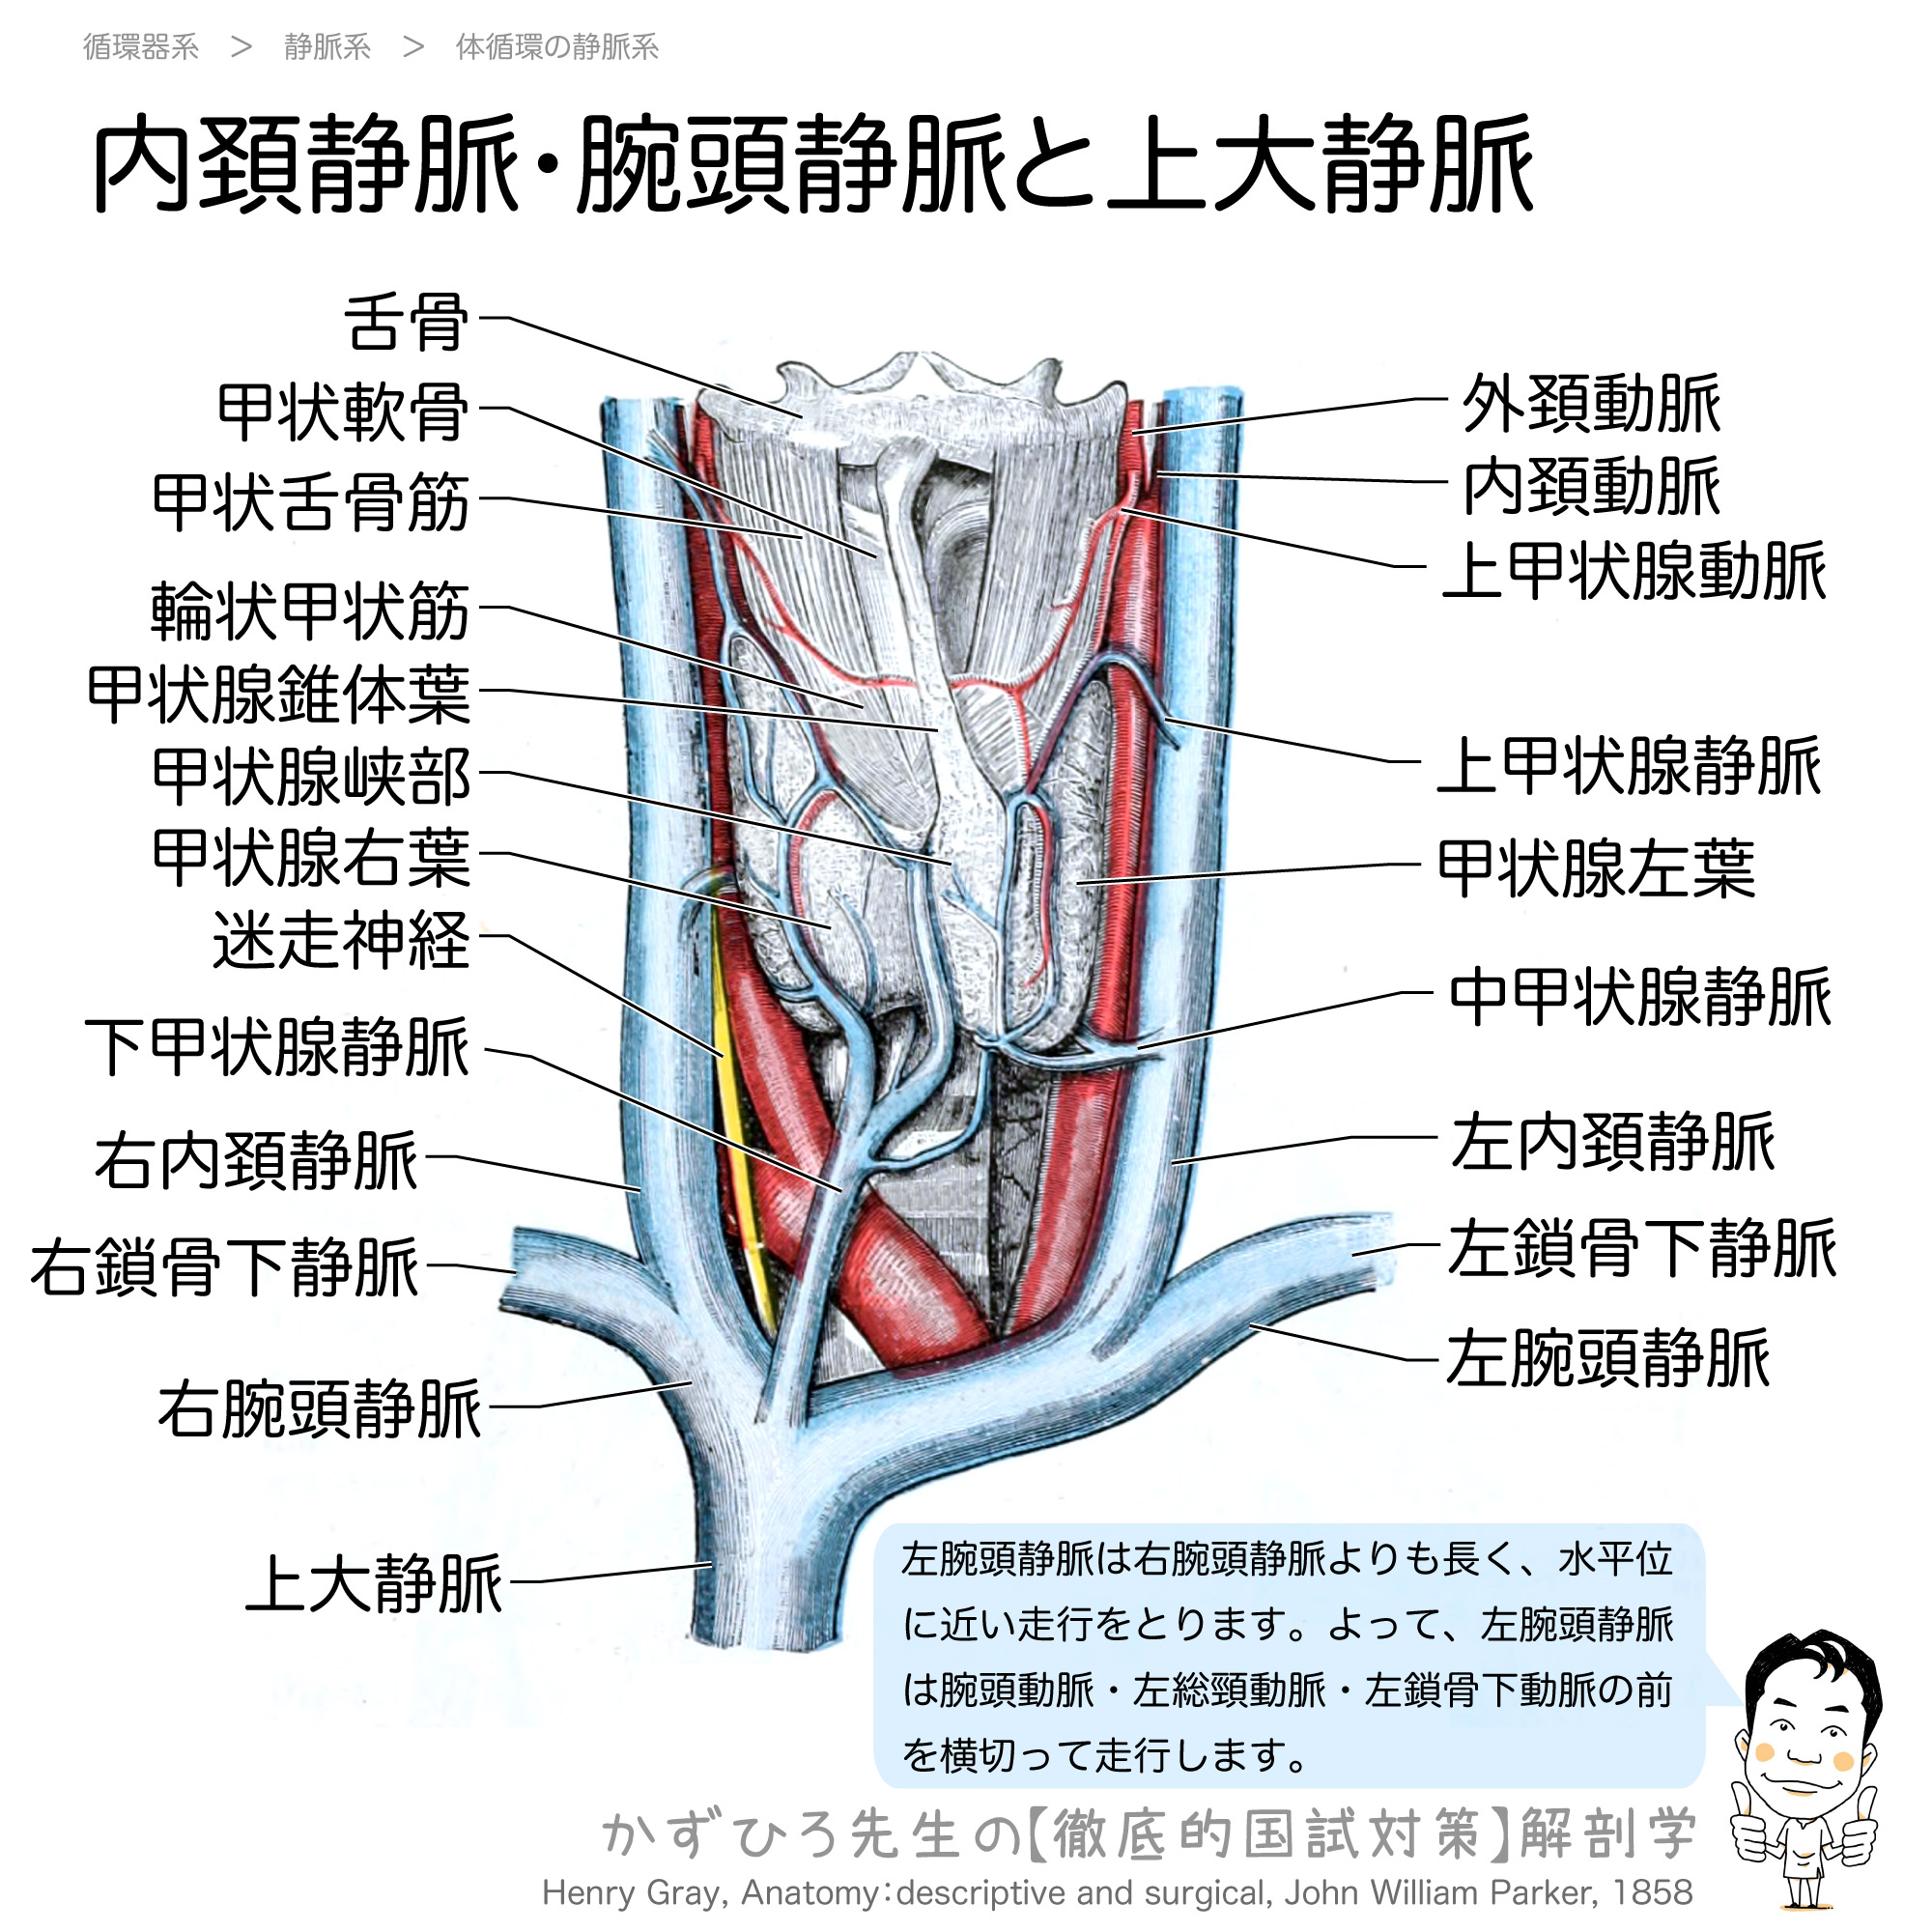 左腕頭静脈は右腕頭静脈より長く 腕頭動脈 左総頚動脈 左鎖骨下動脈の前を横切る 徹底的解剖学